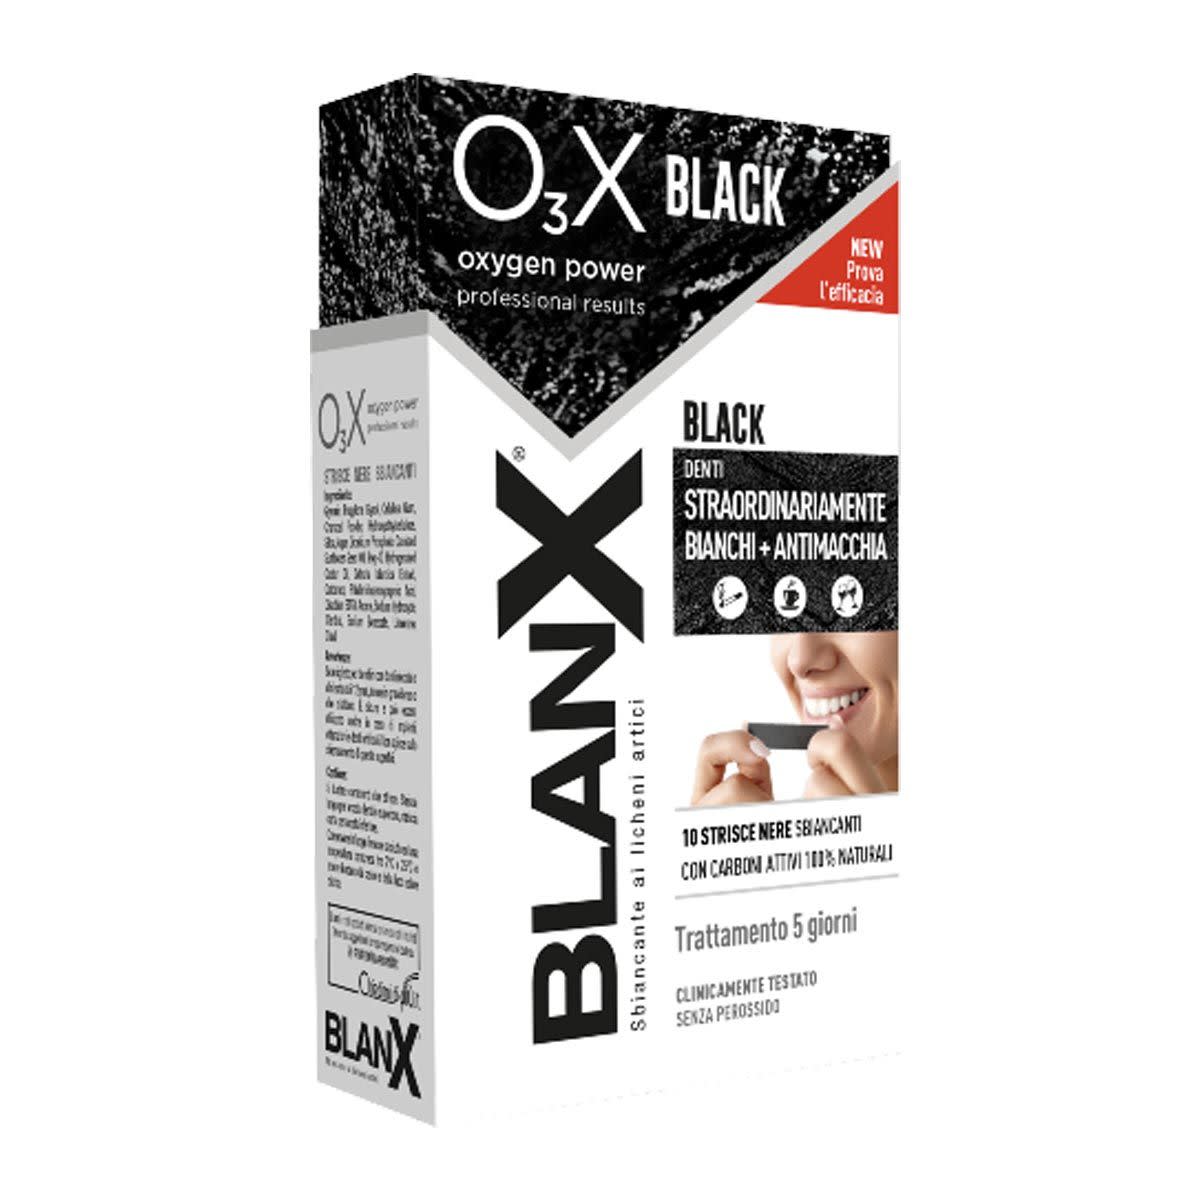 980803934 - Blanx O3X Black Strisce Sbiancanti Antimacchia 14 pezzi - 4706924_2.jpg